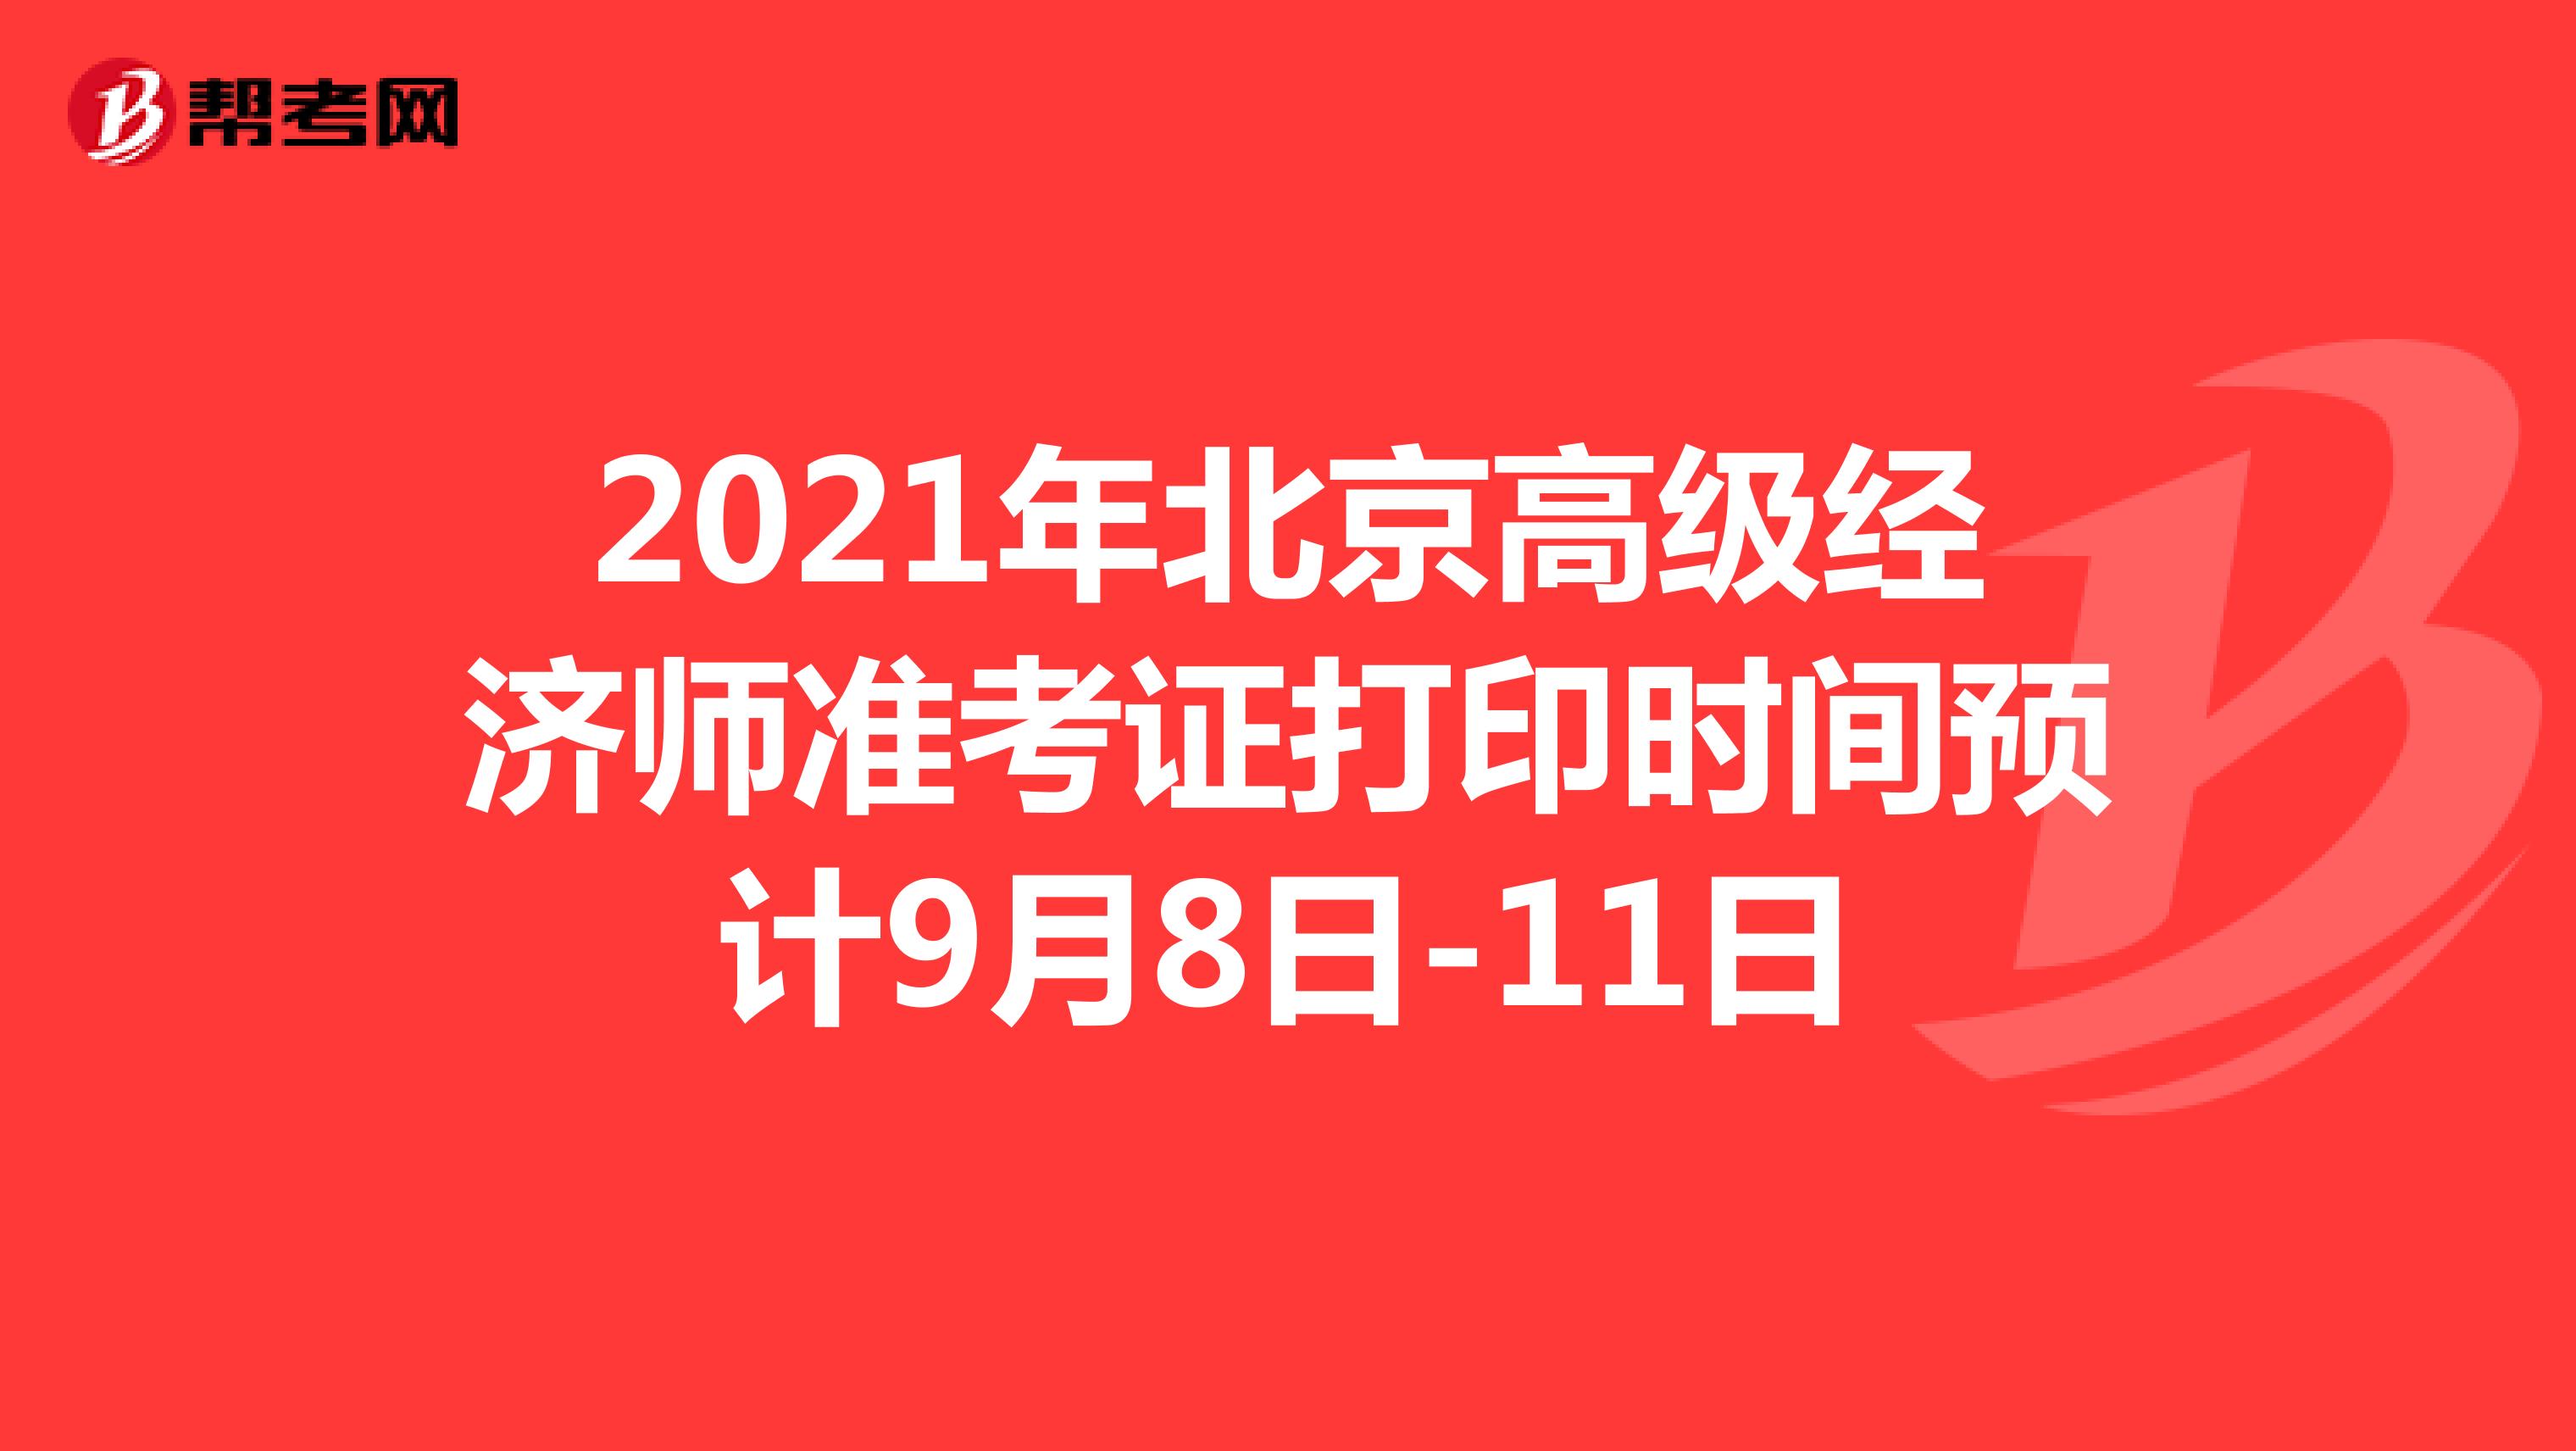 2021年北京高级经济师准考证打印时间预计9月8日-11日